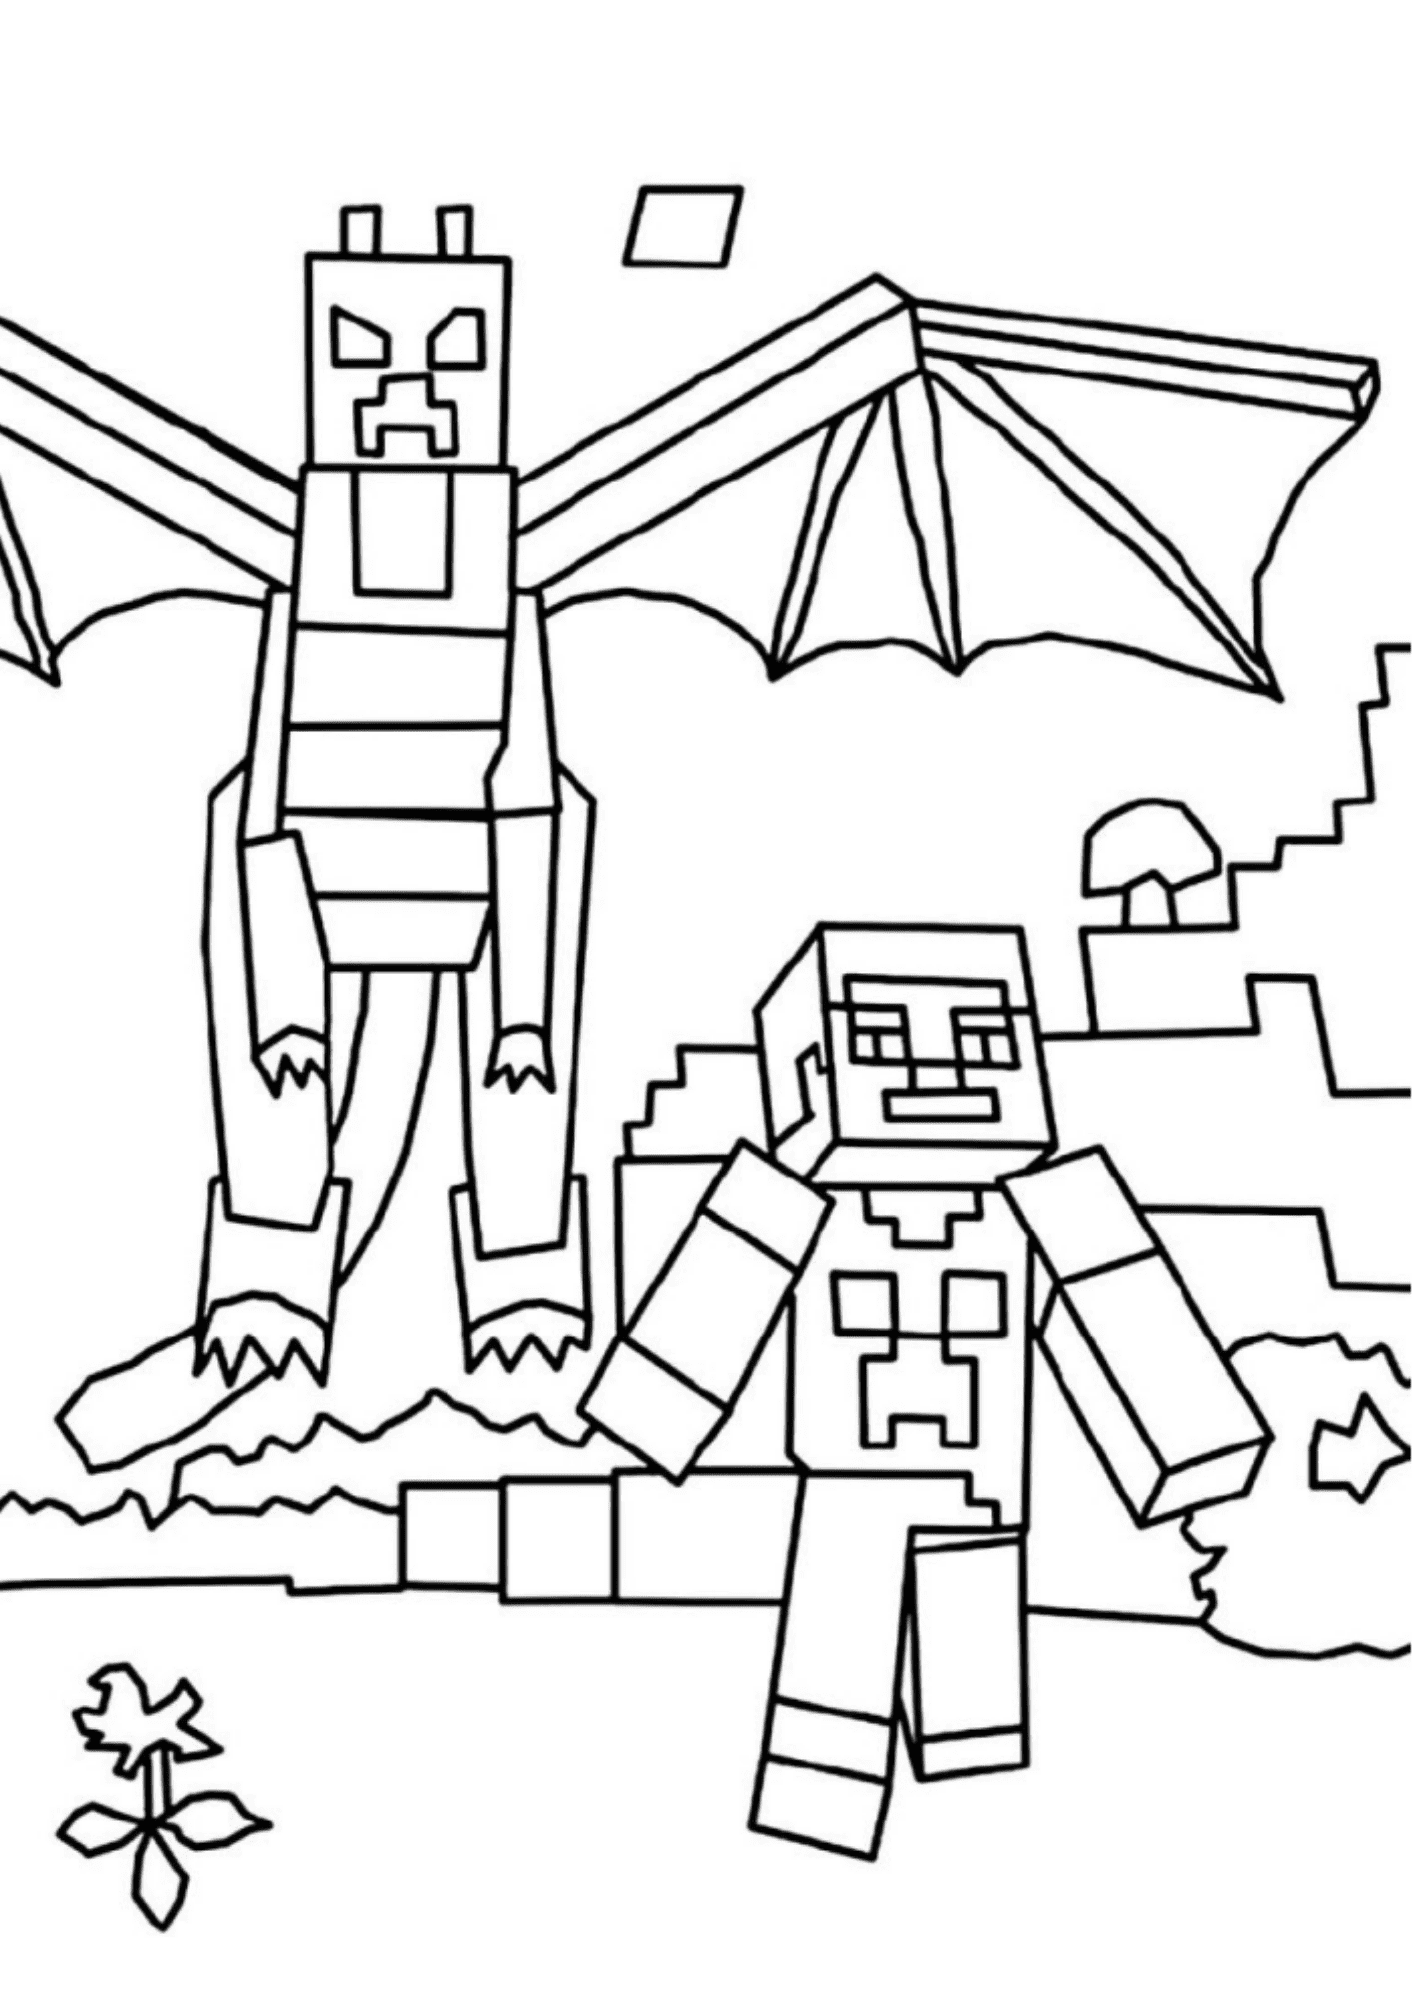 20+ Desenhos de Machado do Minecraft para Imprimir e Colorir/Pintar